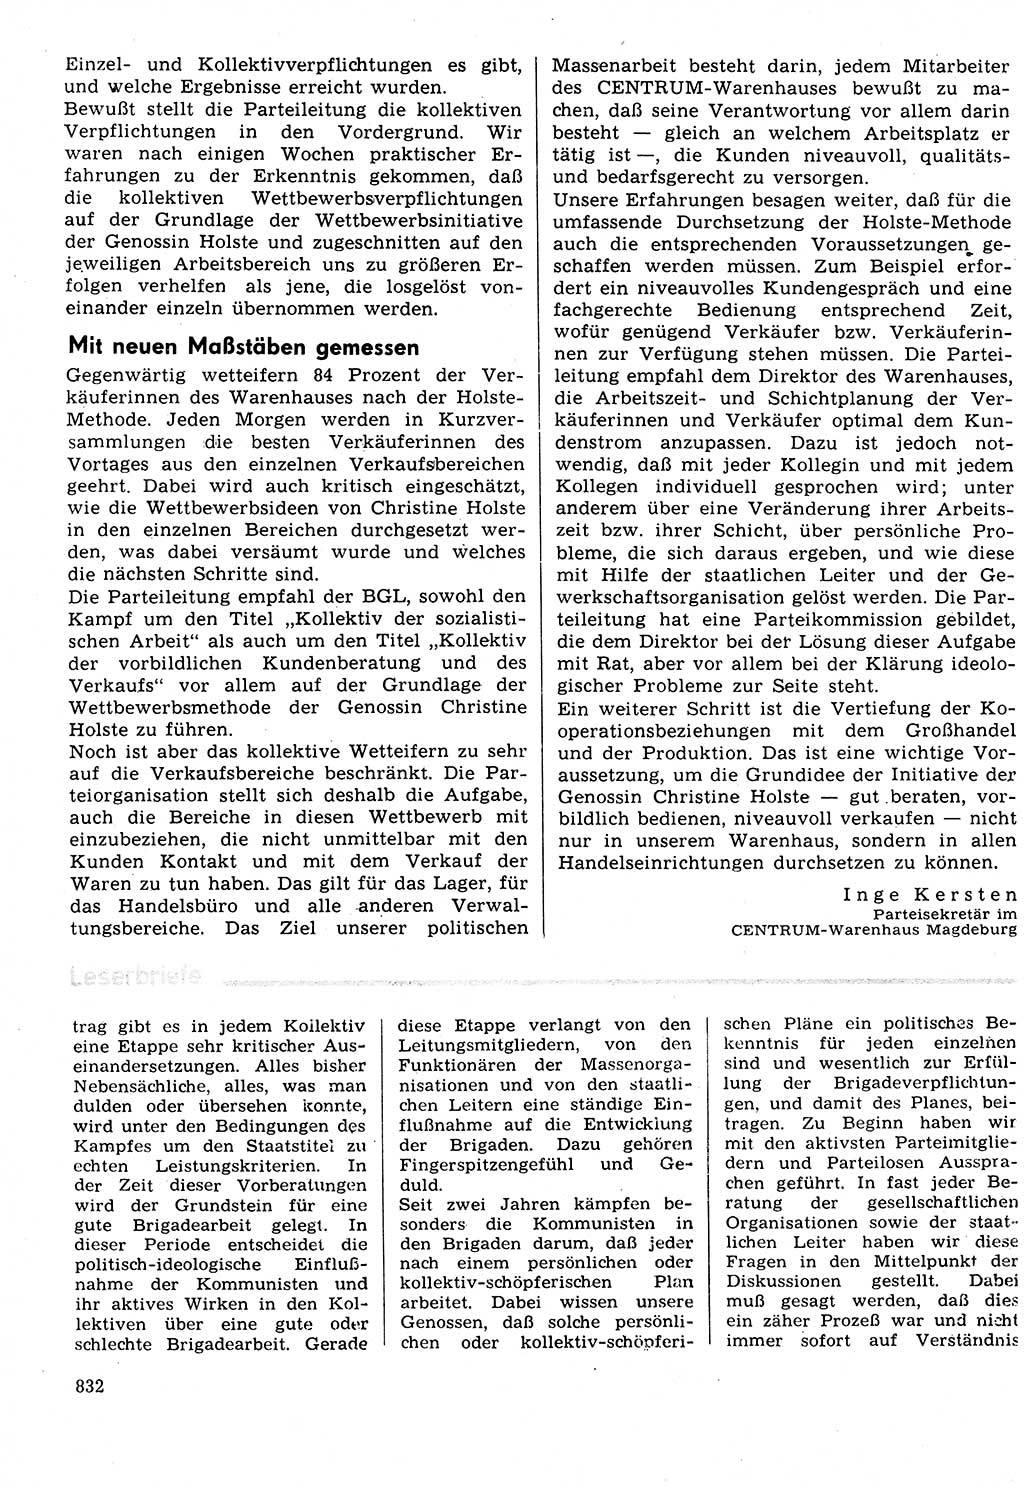 Neuer Weg (NW), Organ des Zentralkomitees (ZK) der SED (Sozialistische Einheitspartei Deutschlands) für Fragen des Parteilebens, 31. Jahrgang [Deutsche Demokratische Republik (DDR)] 1976, Seite 832 (NW ZK SED DDR 1976, S. 832)